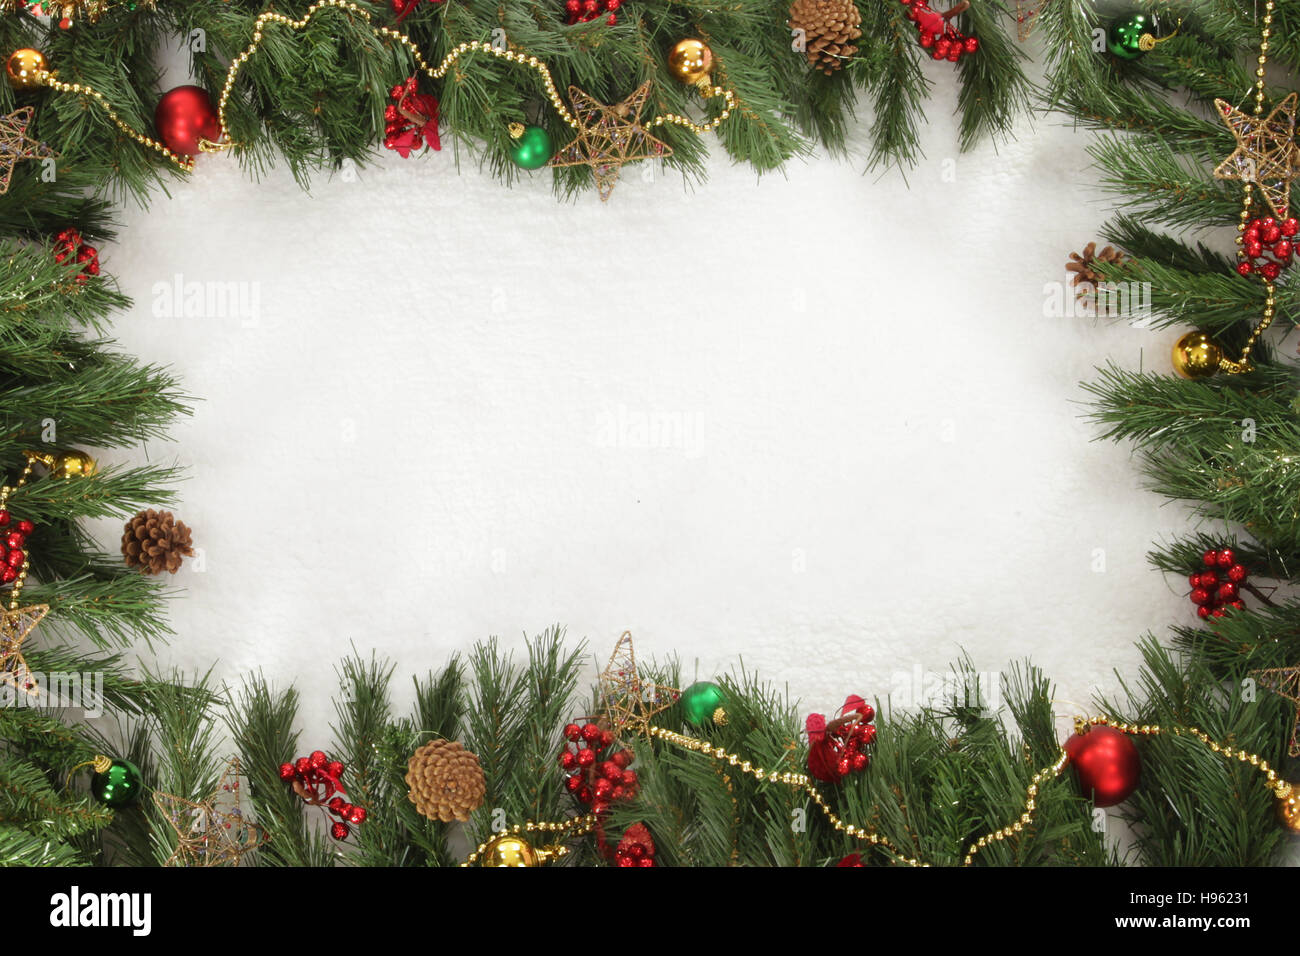 Pantalla de Navidad, Navidad temporada festiva y firmar, espacio vacío, agregue el texto Foto de stock